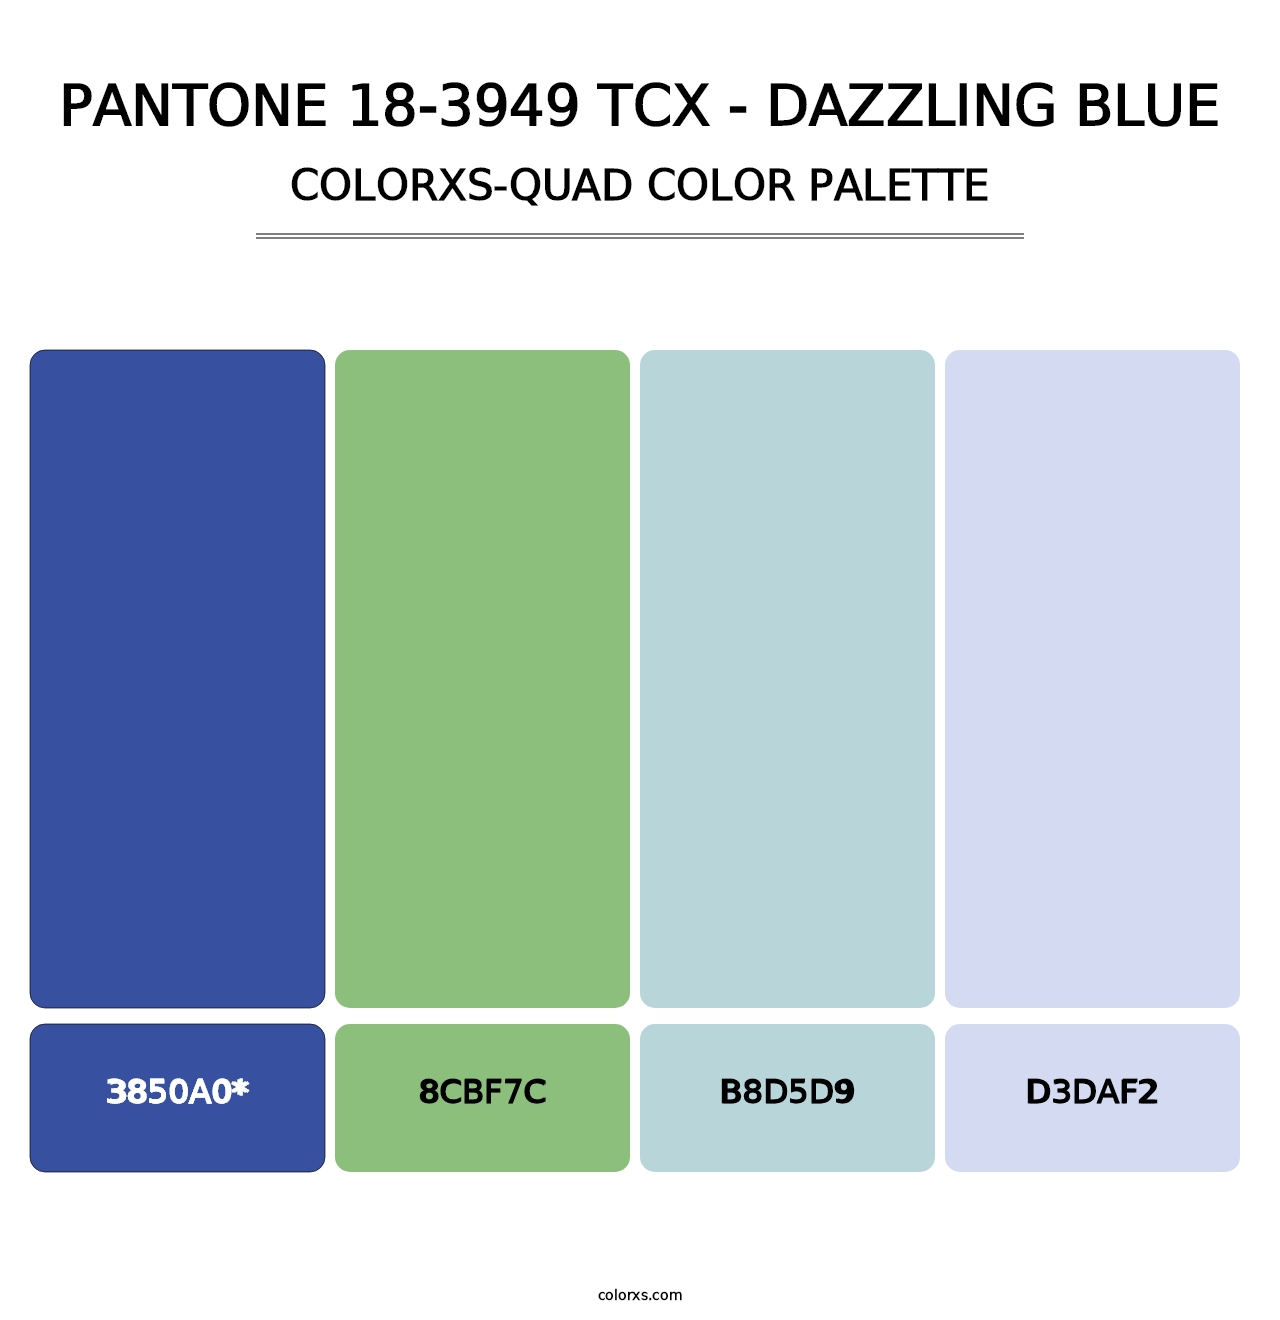 PANTONE 18-3949 TCX - Dazzling Blue - Colorxs Quad Palette